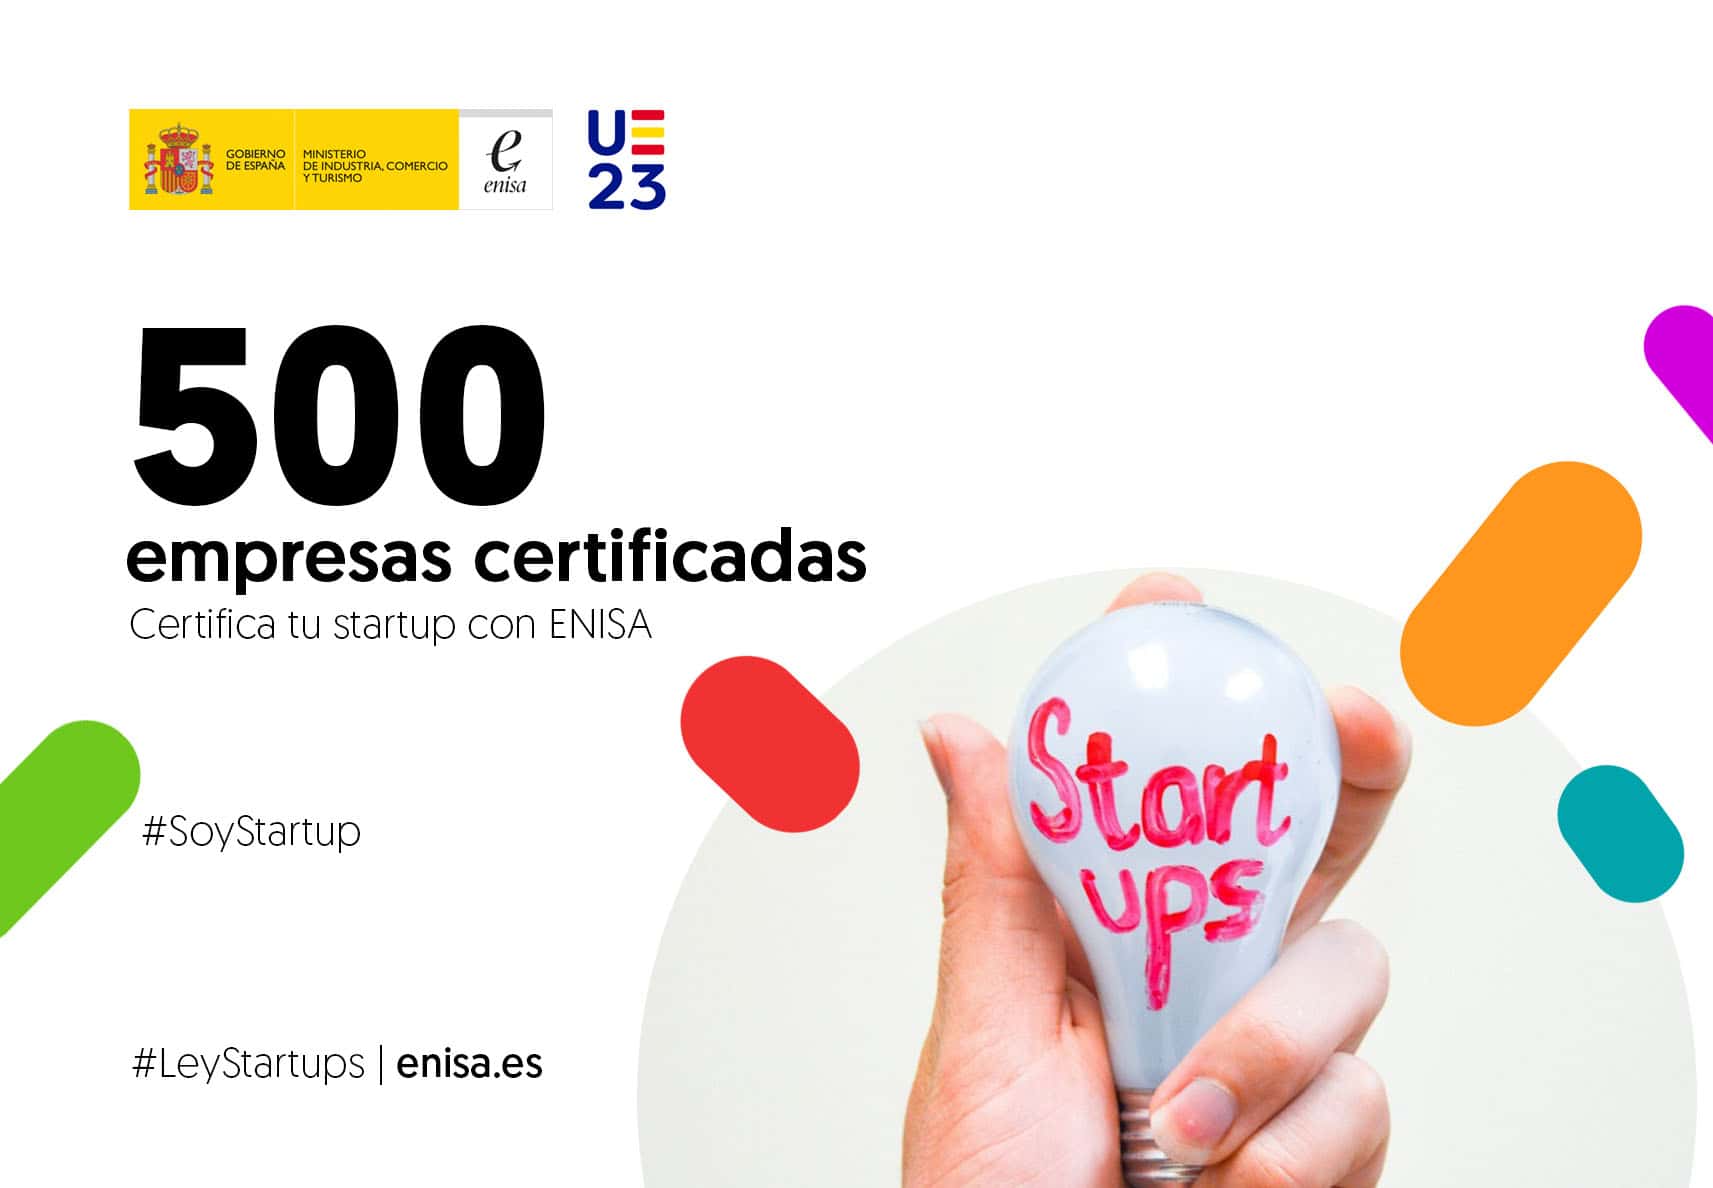 Enisa ha certificado más de 500 startups | DiarioAbiertoDiarioAbierto